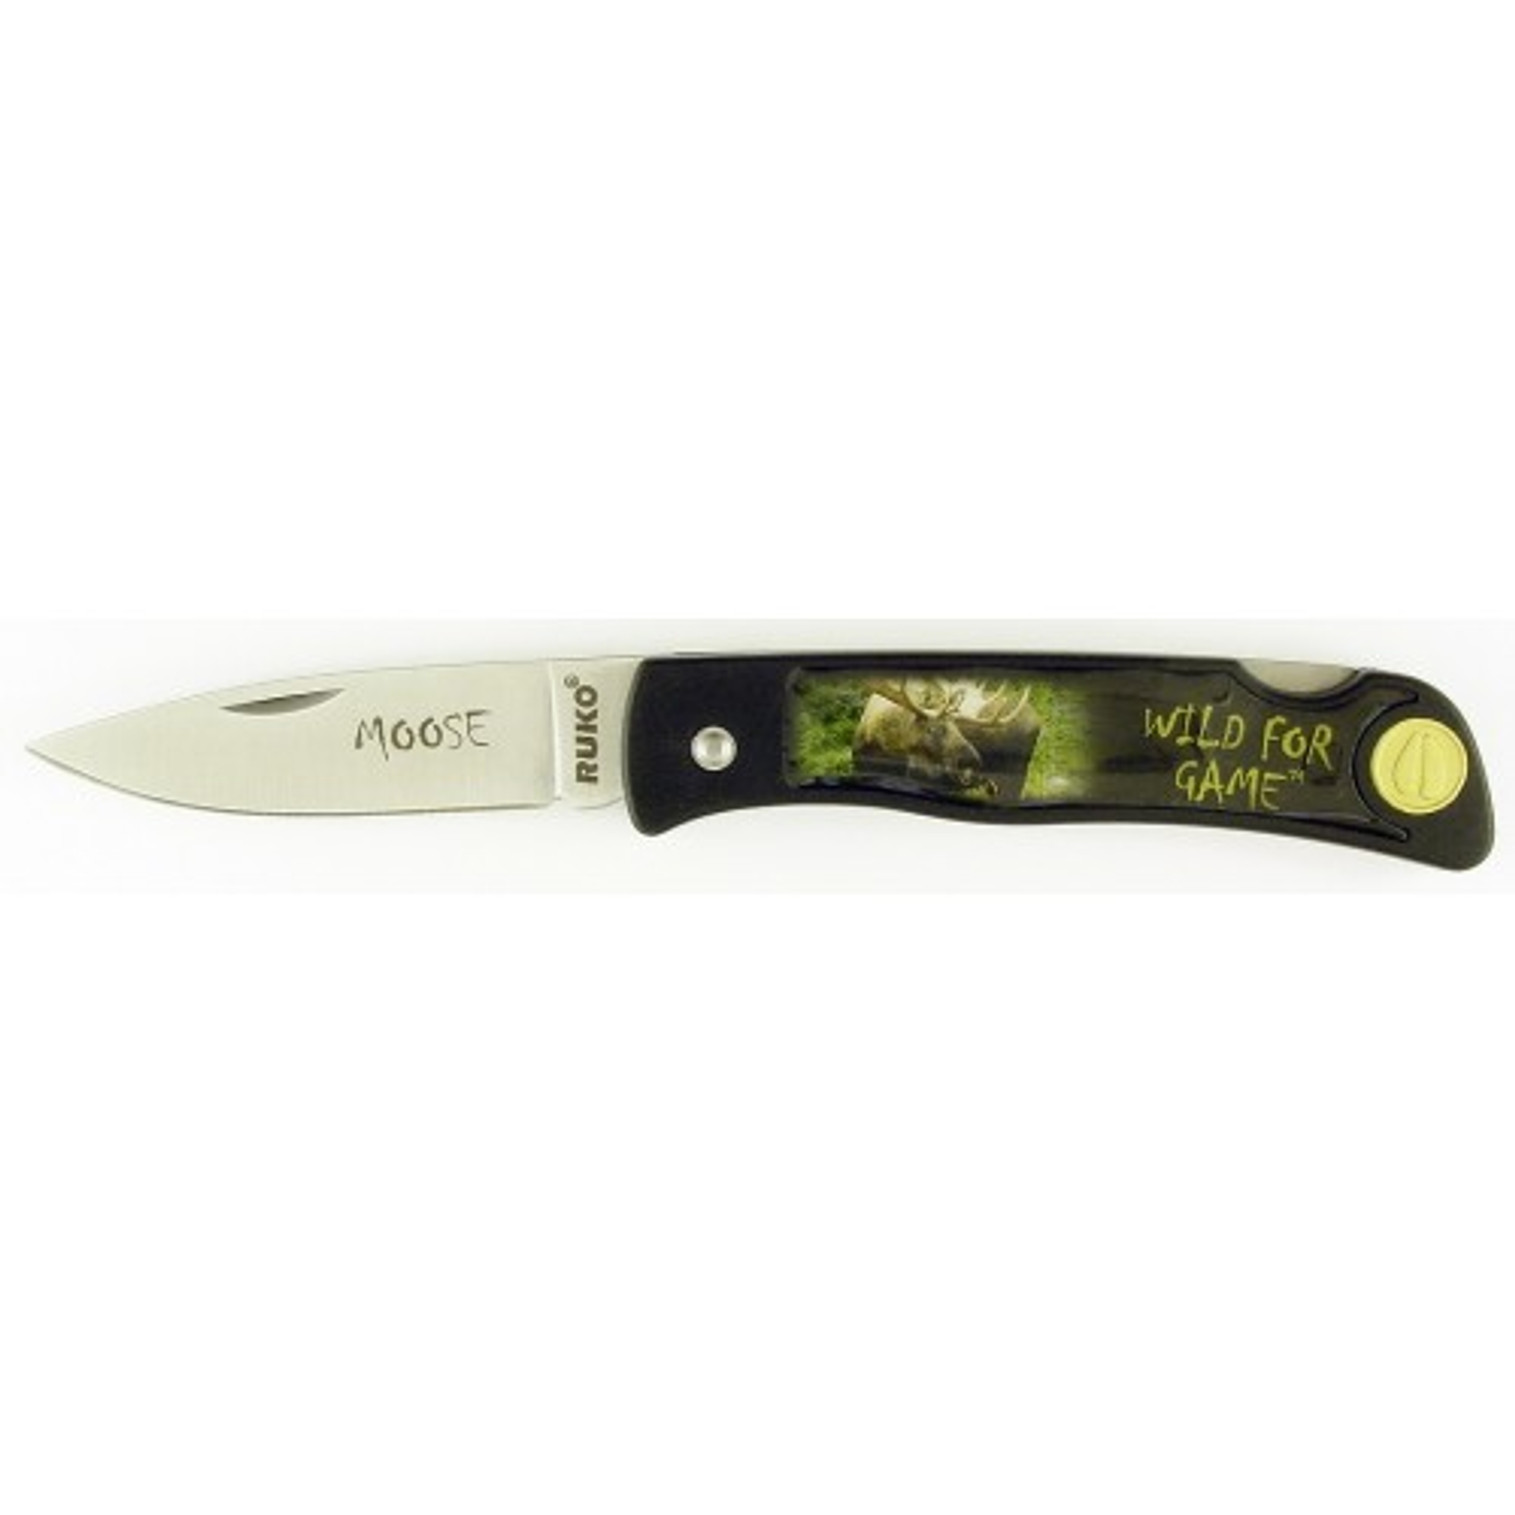 RUKO RUK0130MO, 420A, 2-1/2" Folding Blade Knife, Moose Image on Nylon Handle, boxed